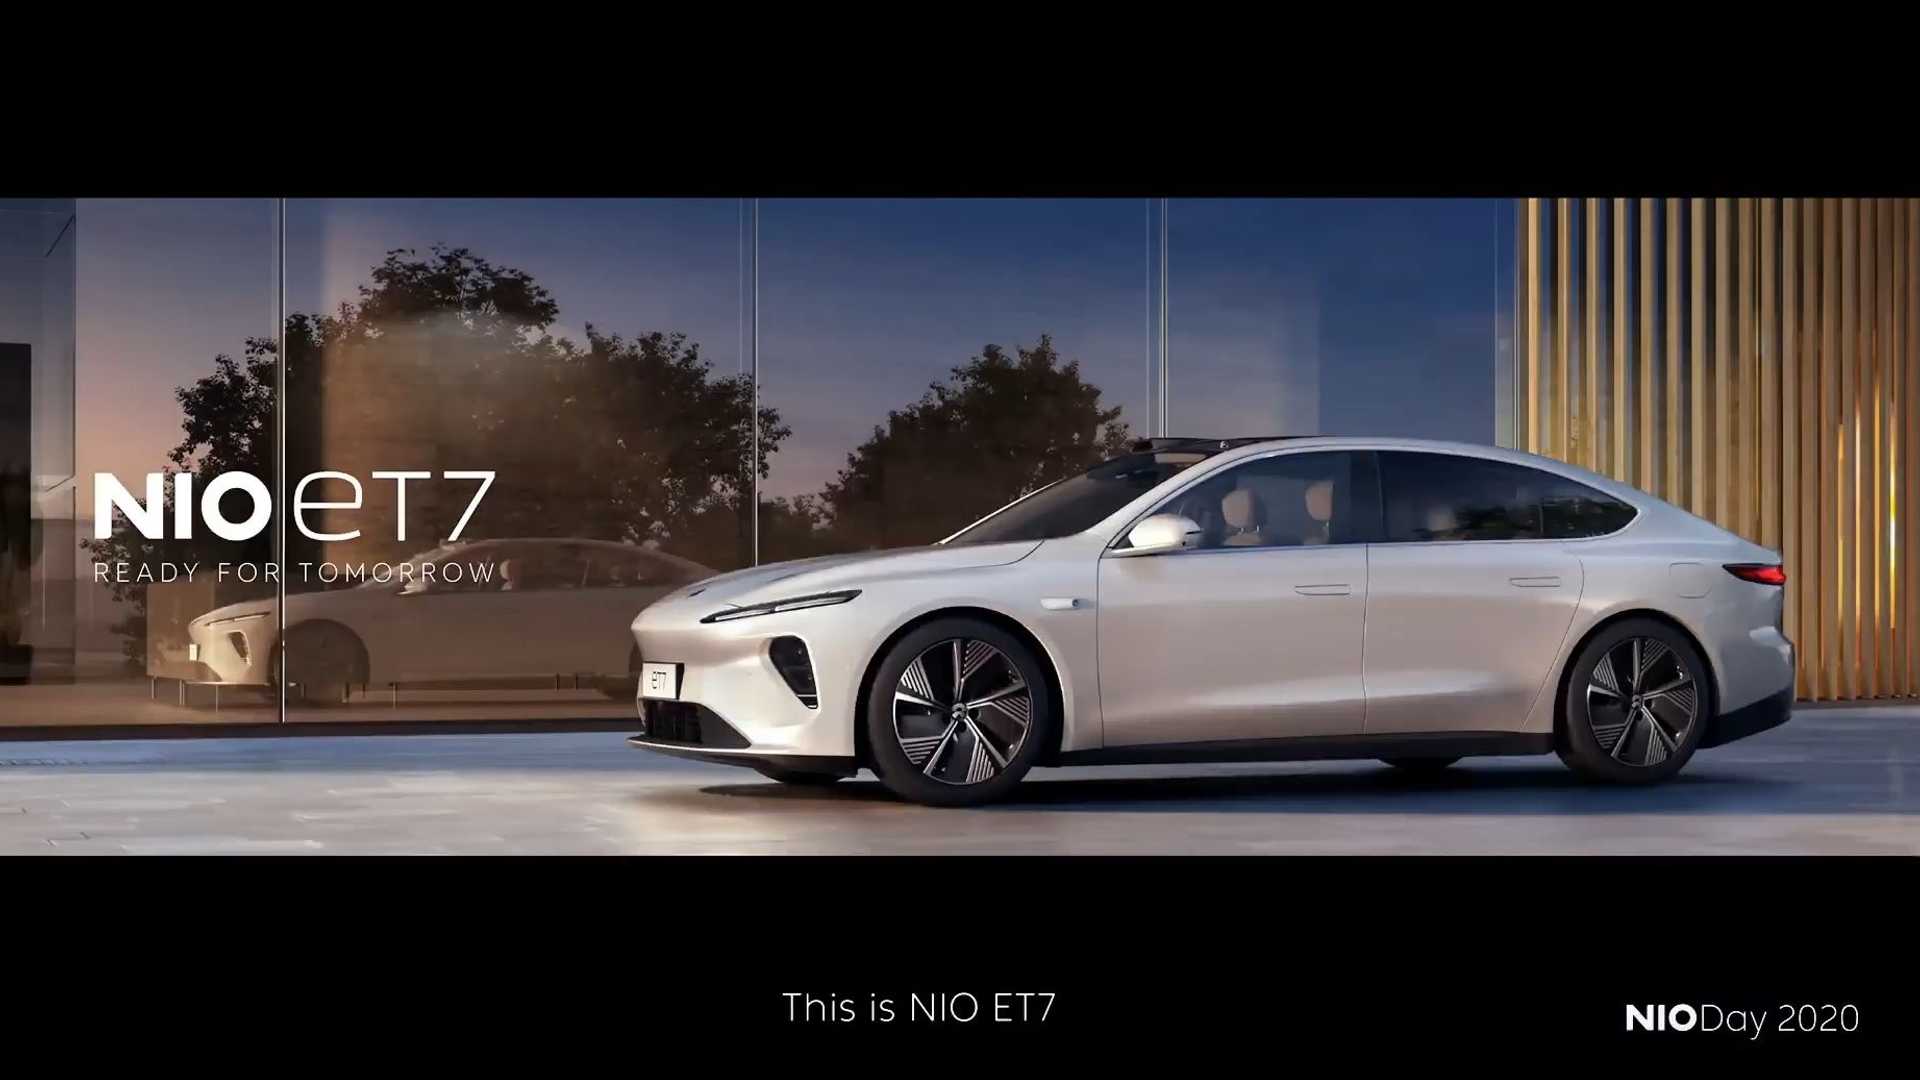 نمای اصلی خودروی الکتریکی / Electric Car نیو / NIO ET7 سفید رنگ در کنار شیشه